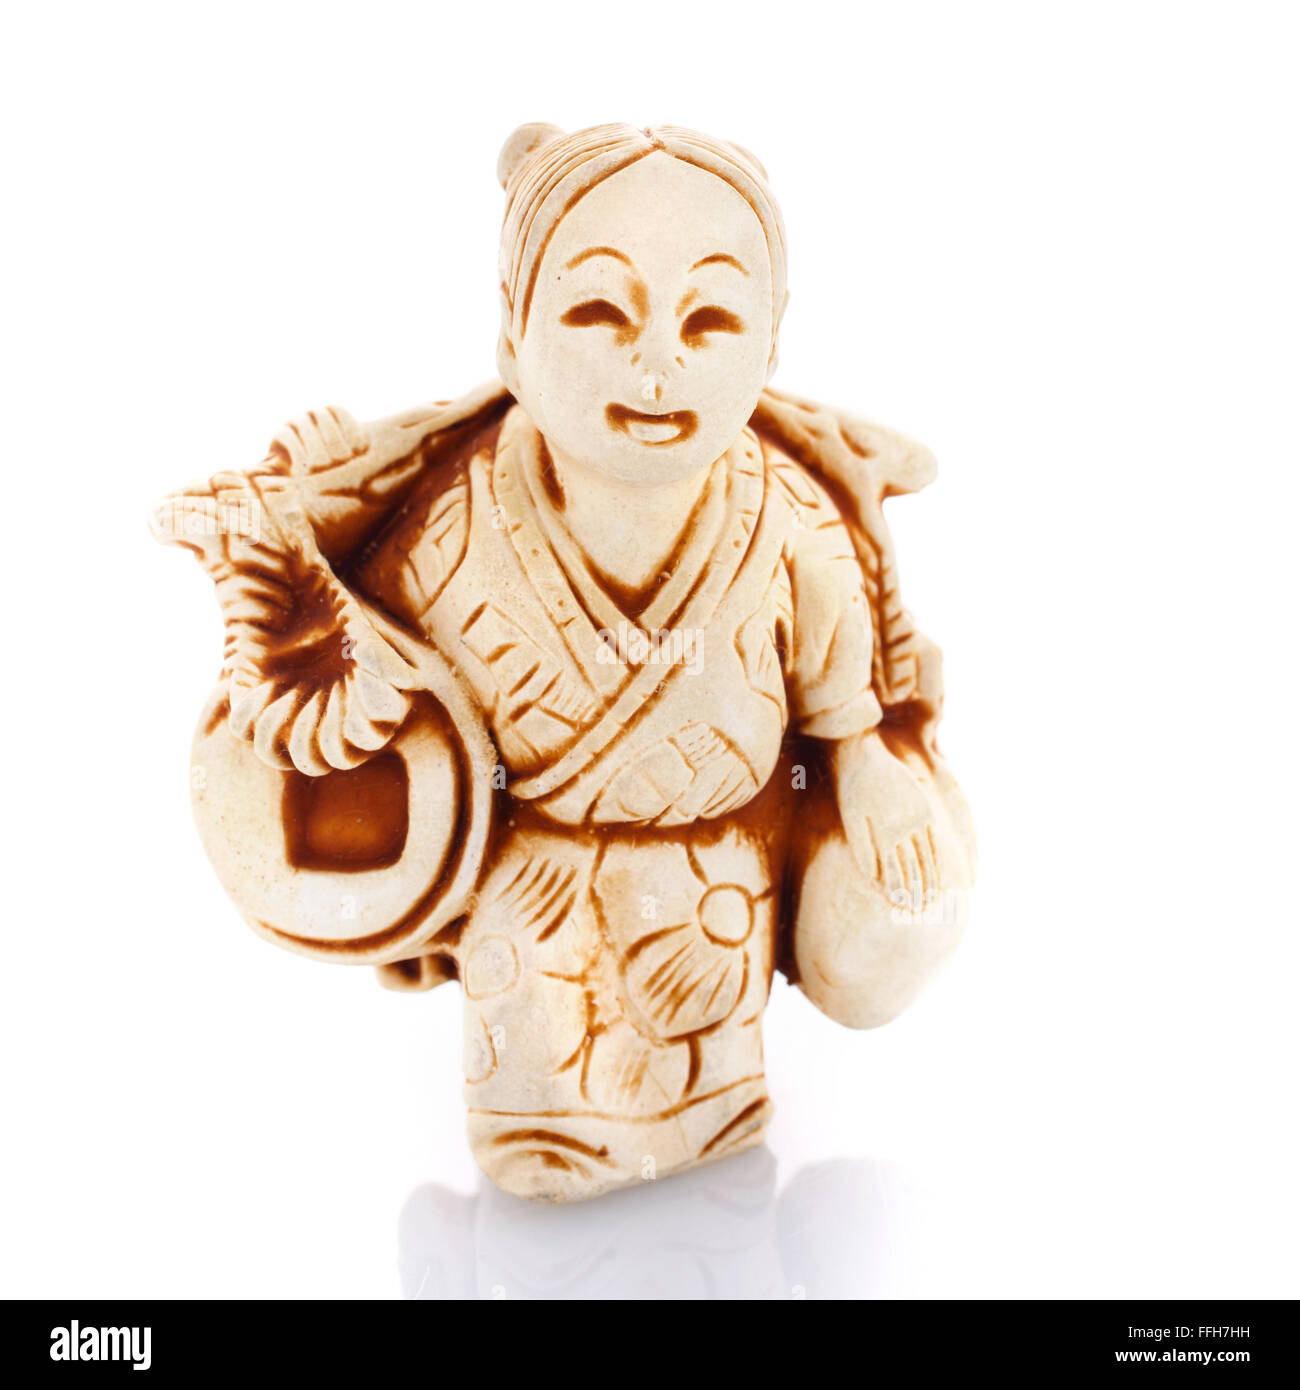 Chinesische Kultur-Figur auf einem weißen bacgroung Stockfoto